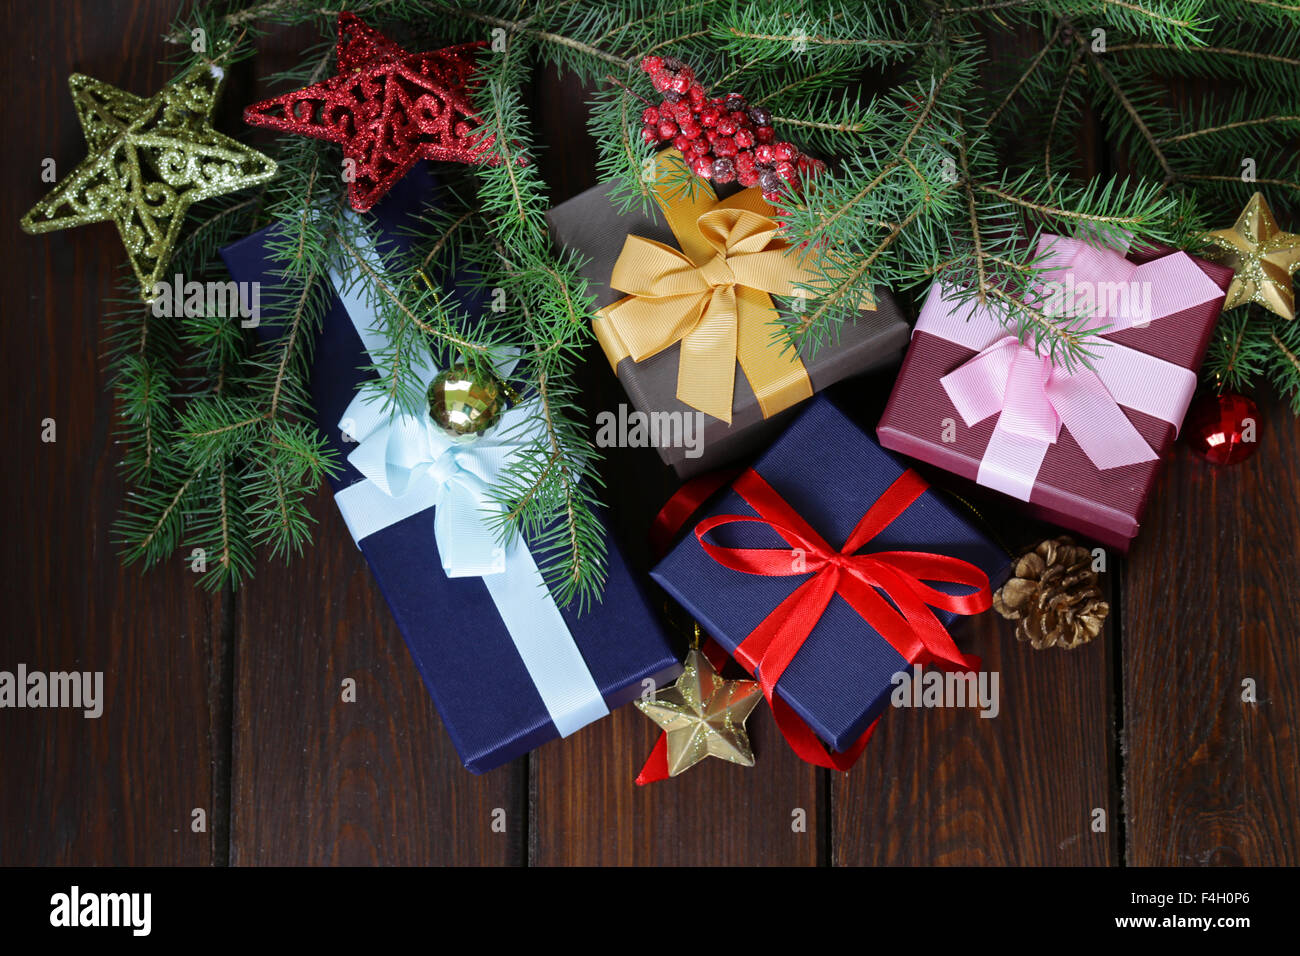 Geschenk-Boxen mit festlichen Bändern und Weihnachtsschmuck auf einem hölzernen Hintergrund Stockfoto